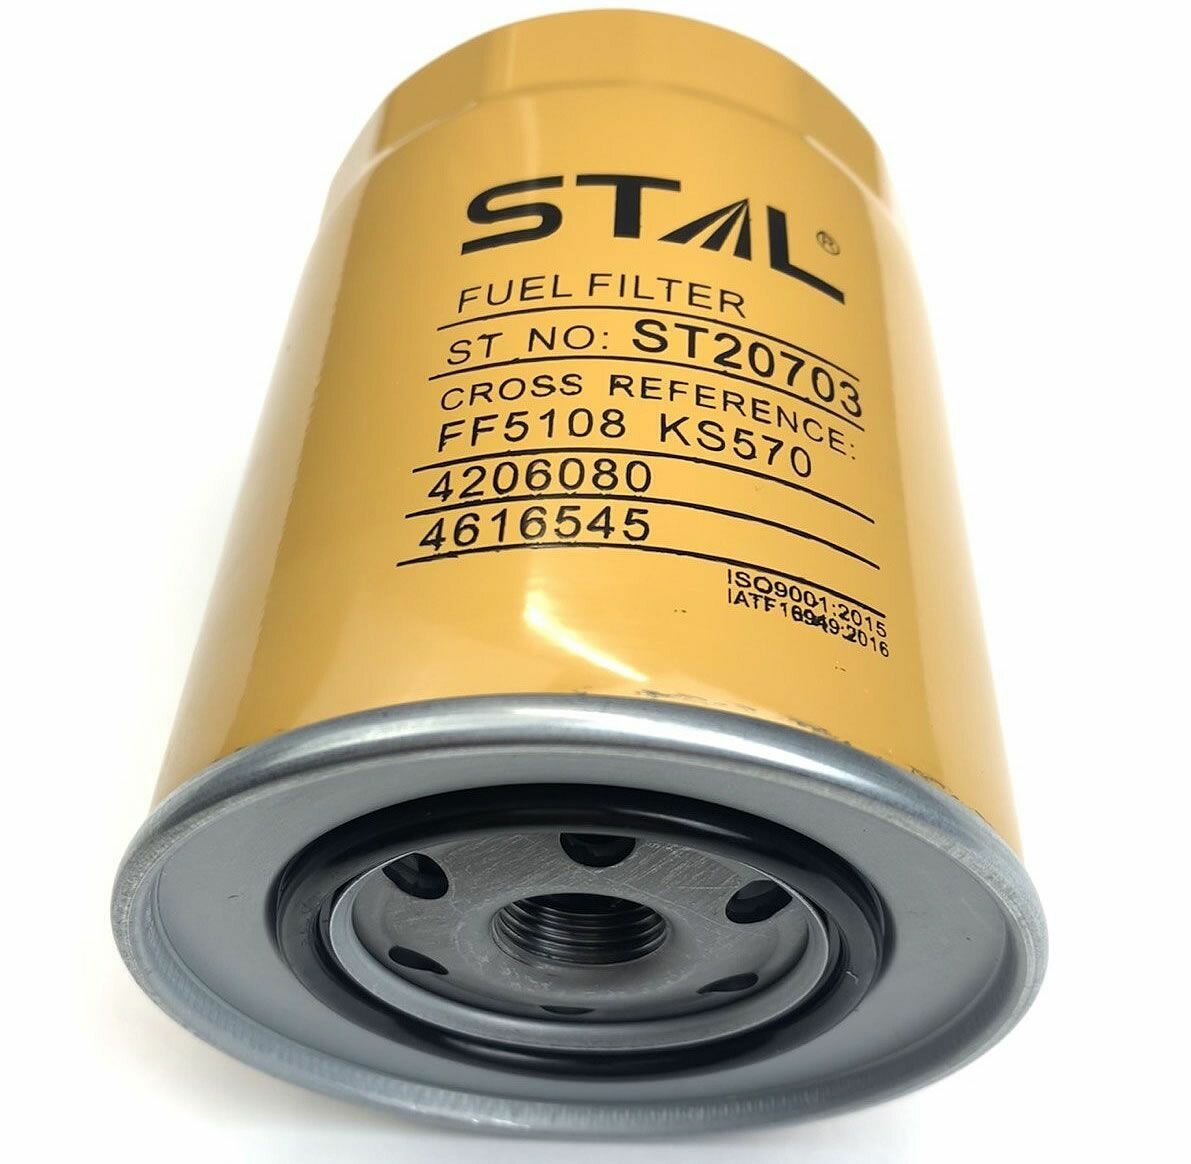 Фильтр топливный STAL ST20703, аналог фильтра 4206080, 4616545, HITACHI